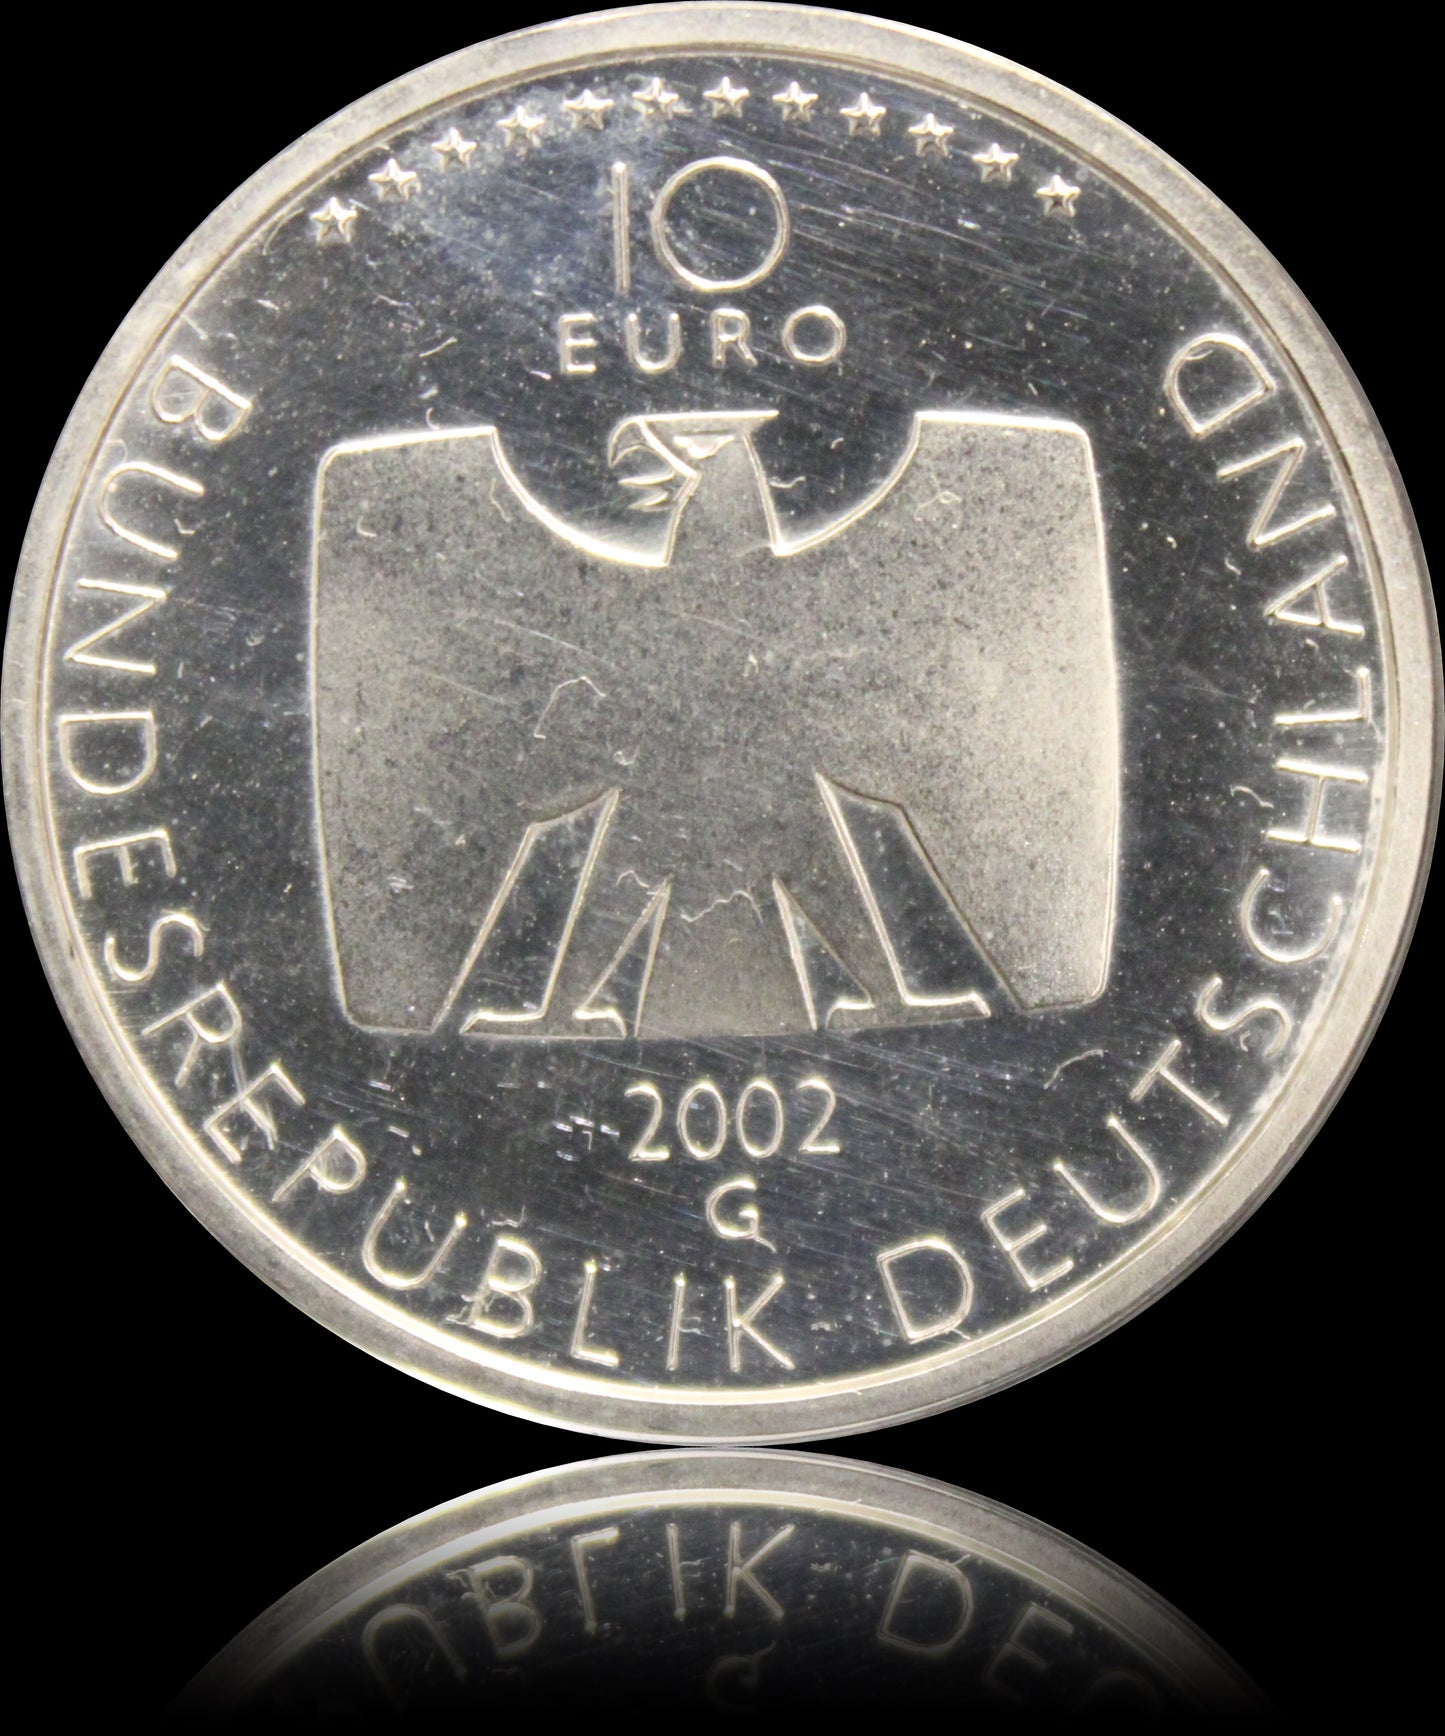 50 JAHRE DEUTSCHES FERNSEHEN, Serie 10 € Silber Gedenkmünzen Deutschland, Stempelglanz, 2002